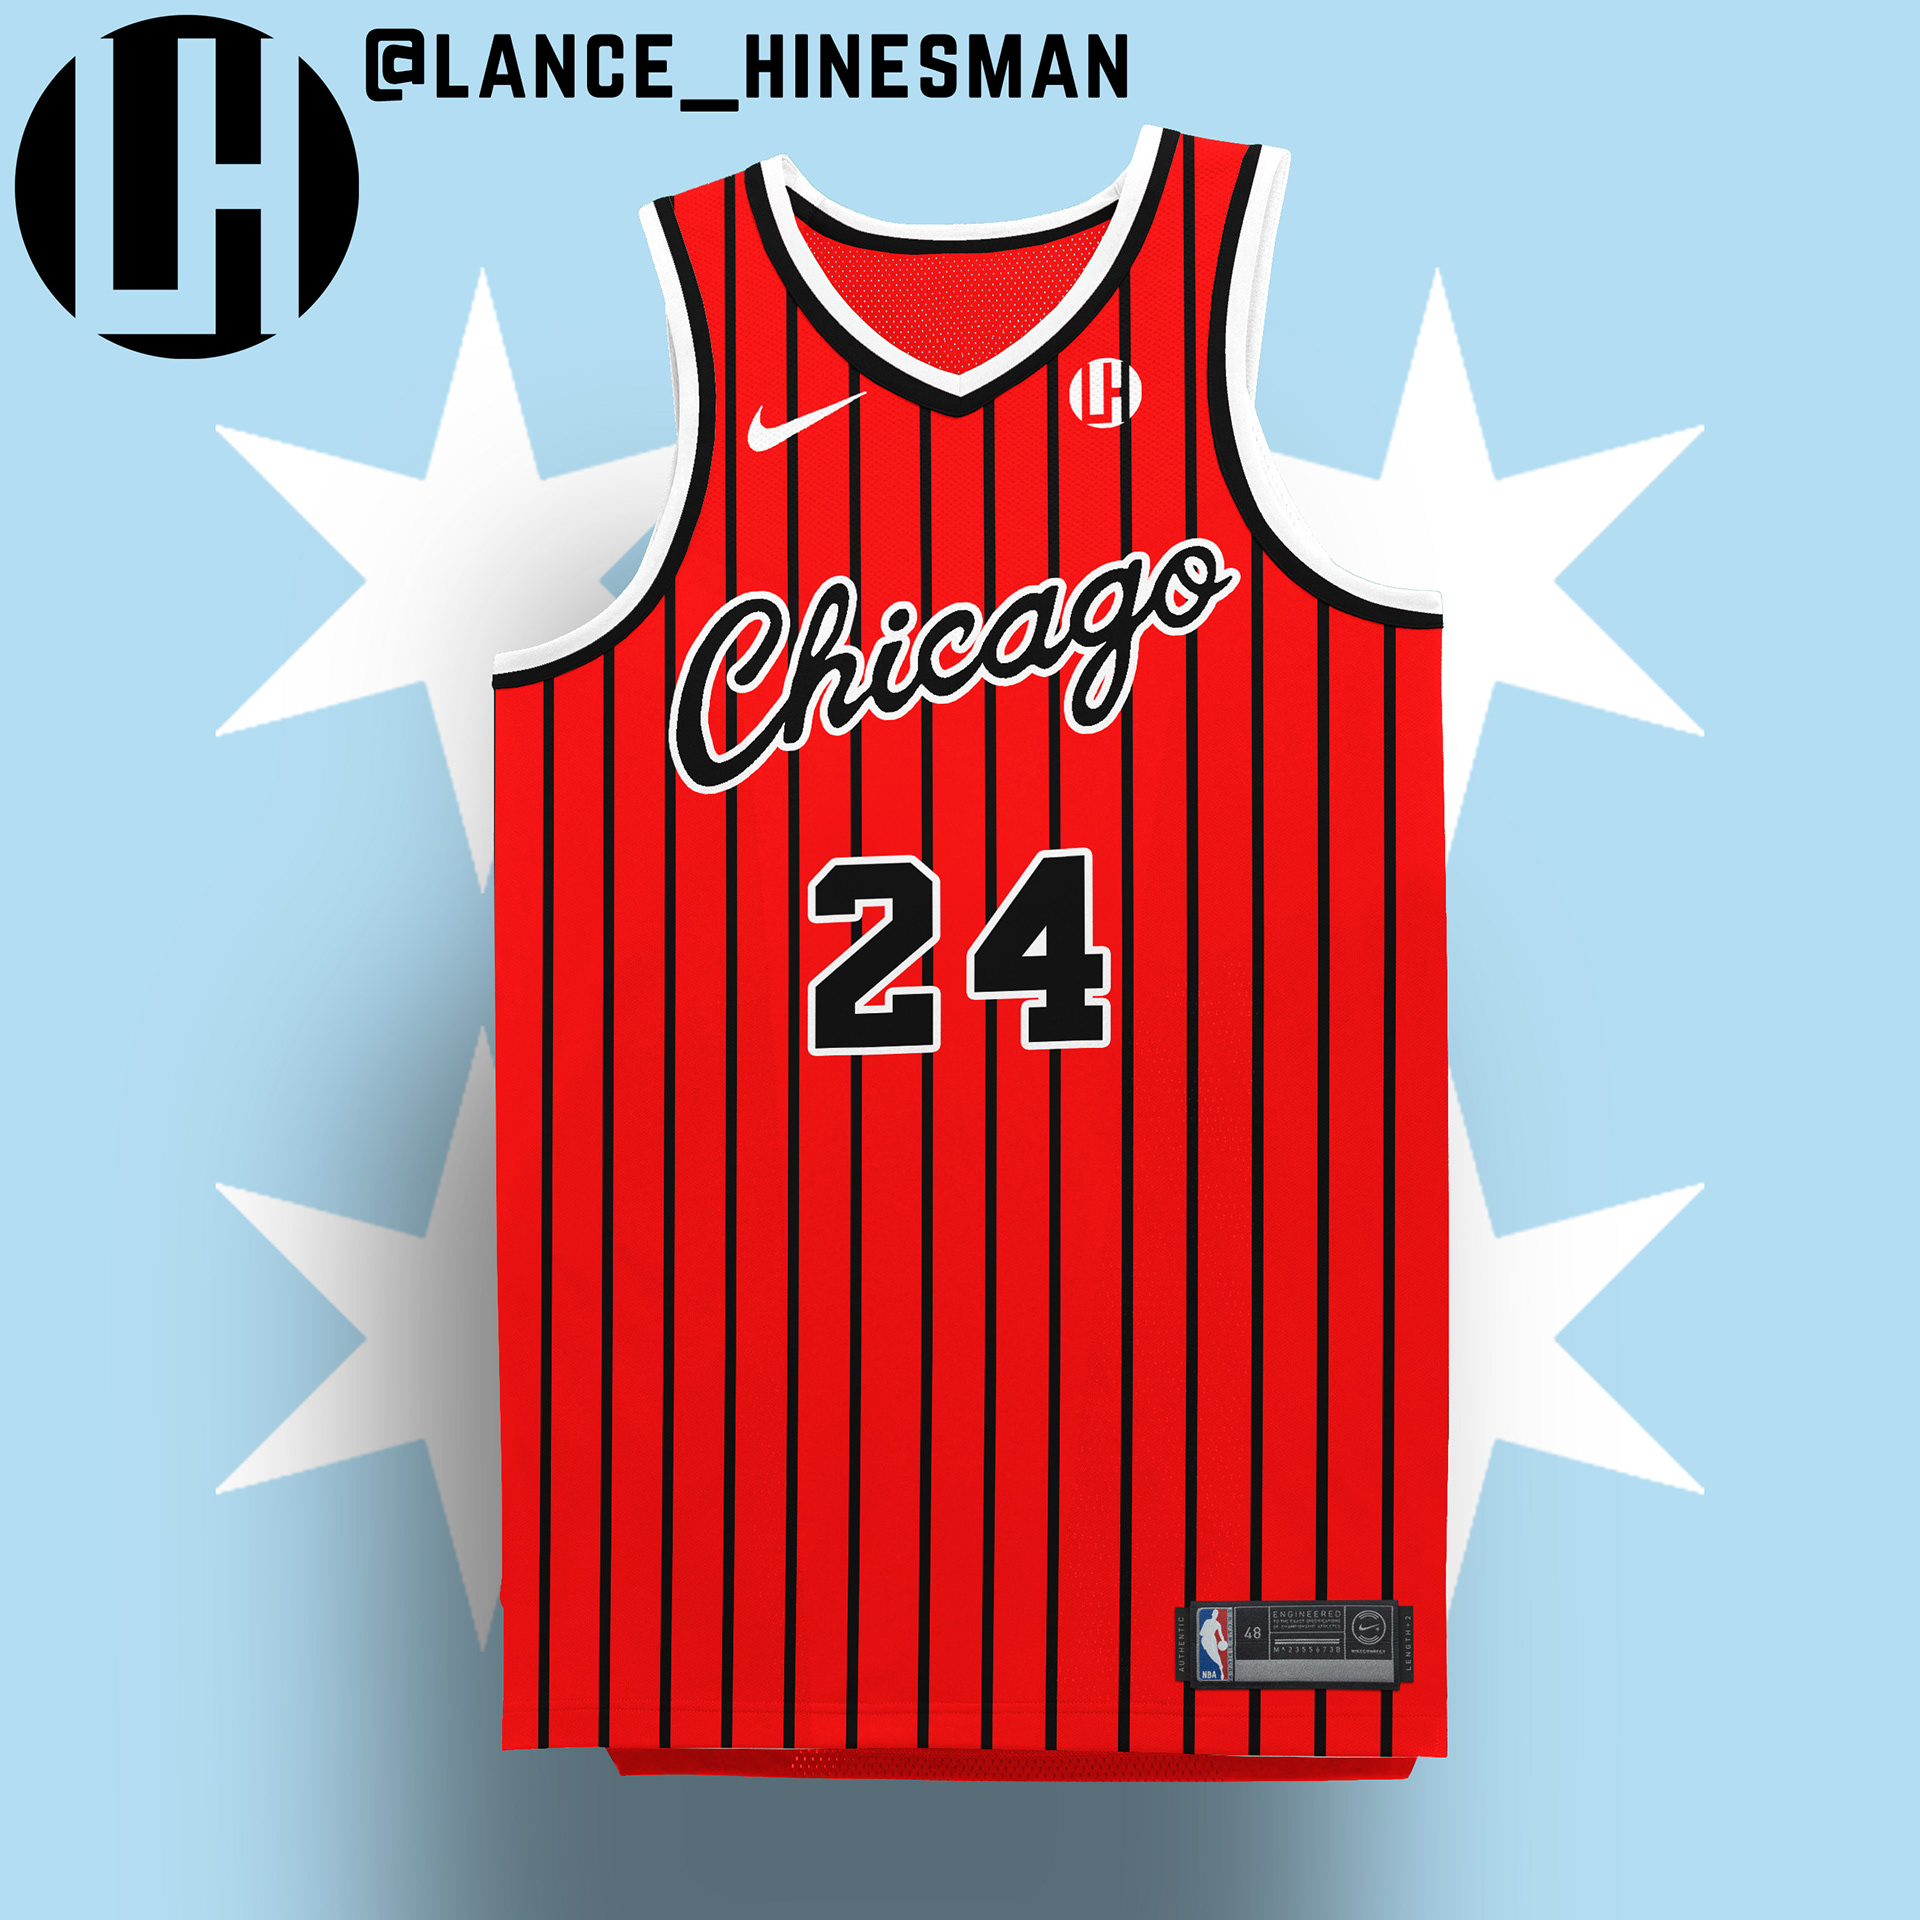 Lance Hinesman - NBA Christmas Day Jersey Concepts